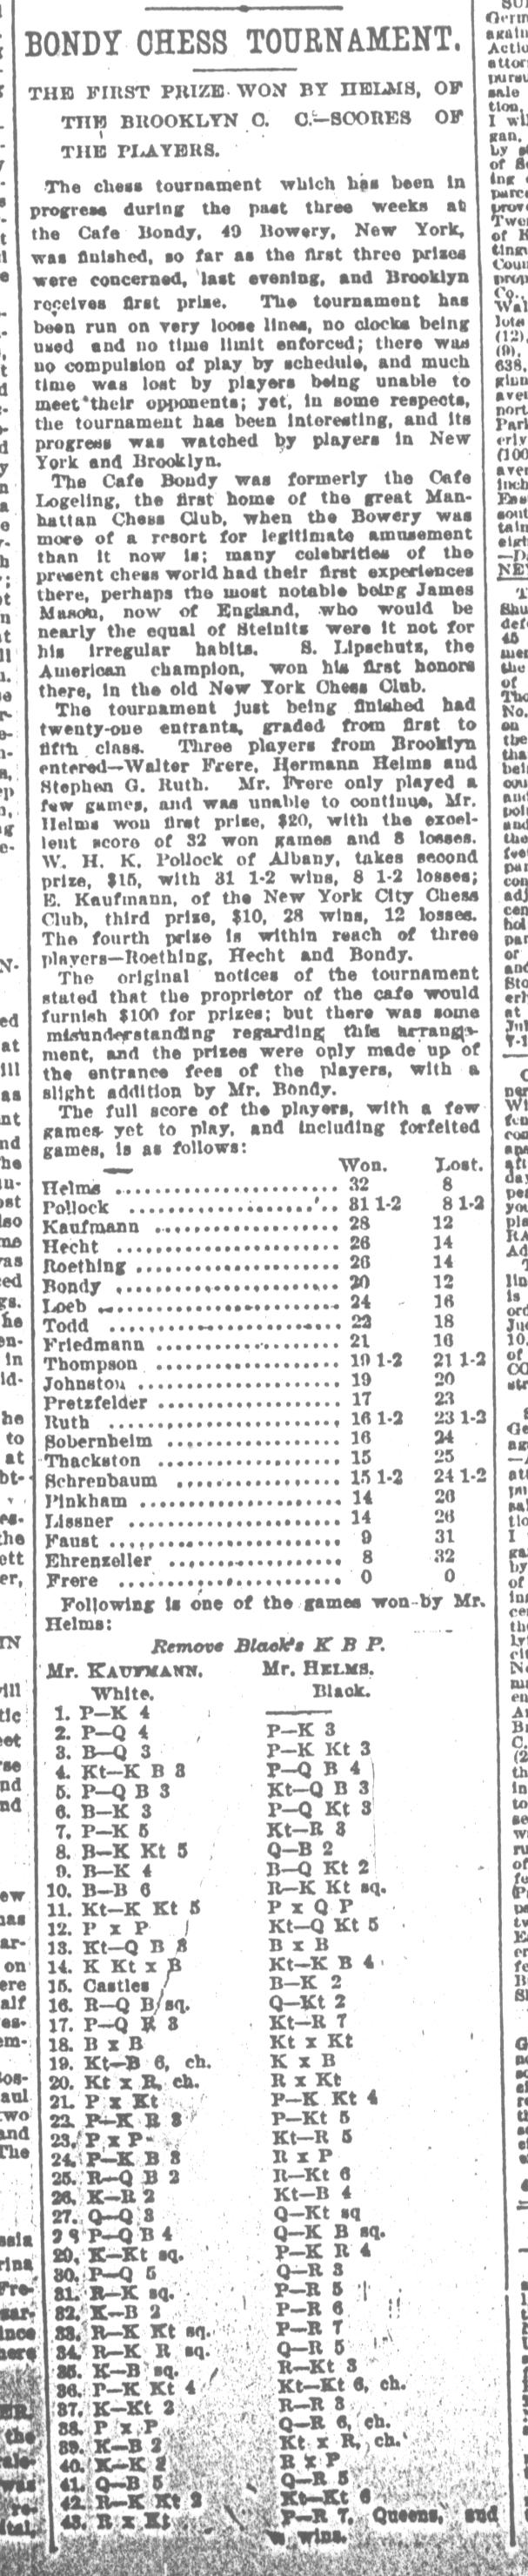 1893.08.29-01 Brooklyn Daily Standard-Union.jpg